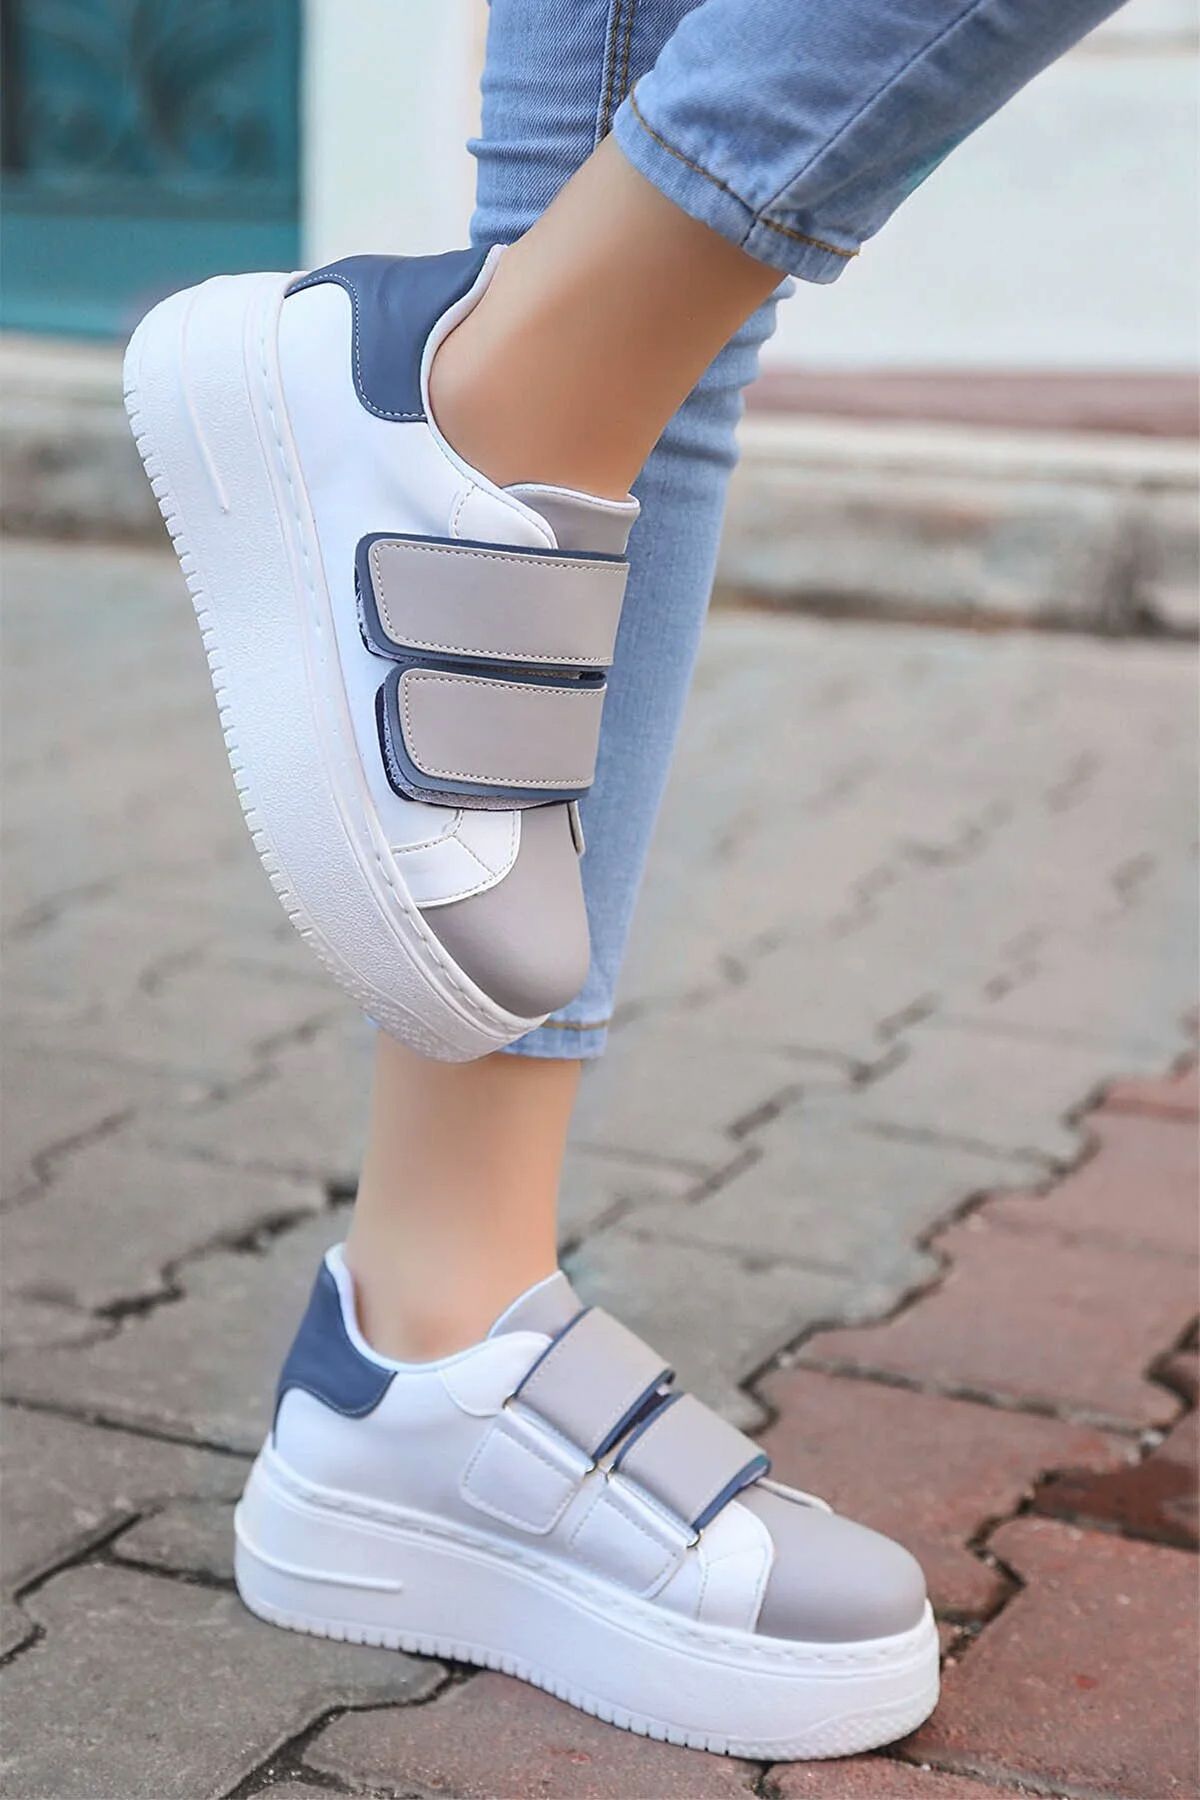 Scarpe Butik Inter Kalın Tabanlı Hafif Ortopedik Çift Cırtlı Spor Ayakkabı Sneaker Yürüyüş Ayakkabı